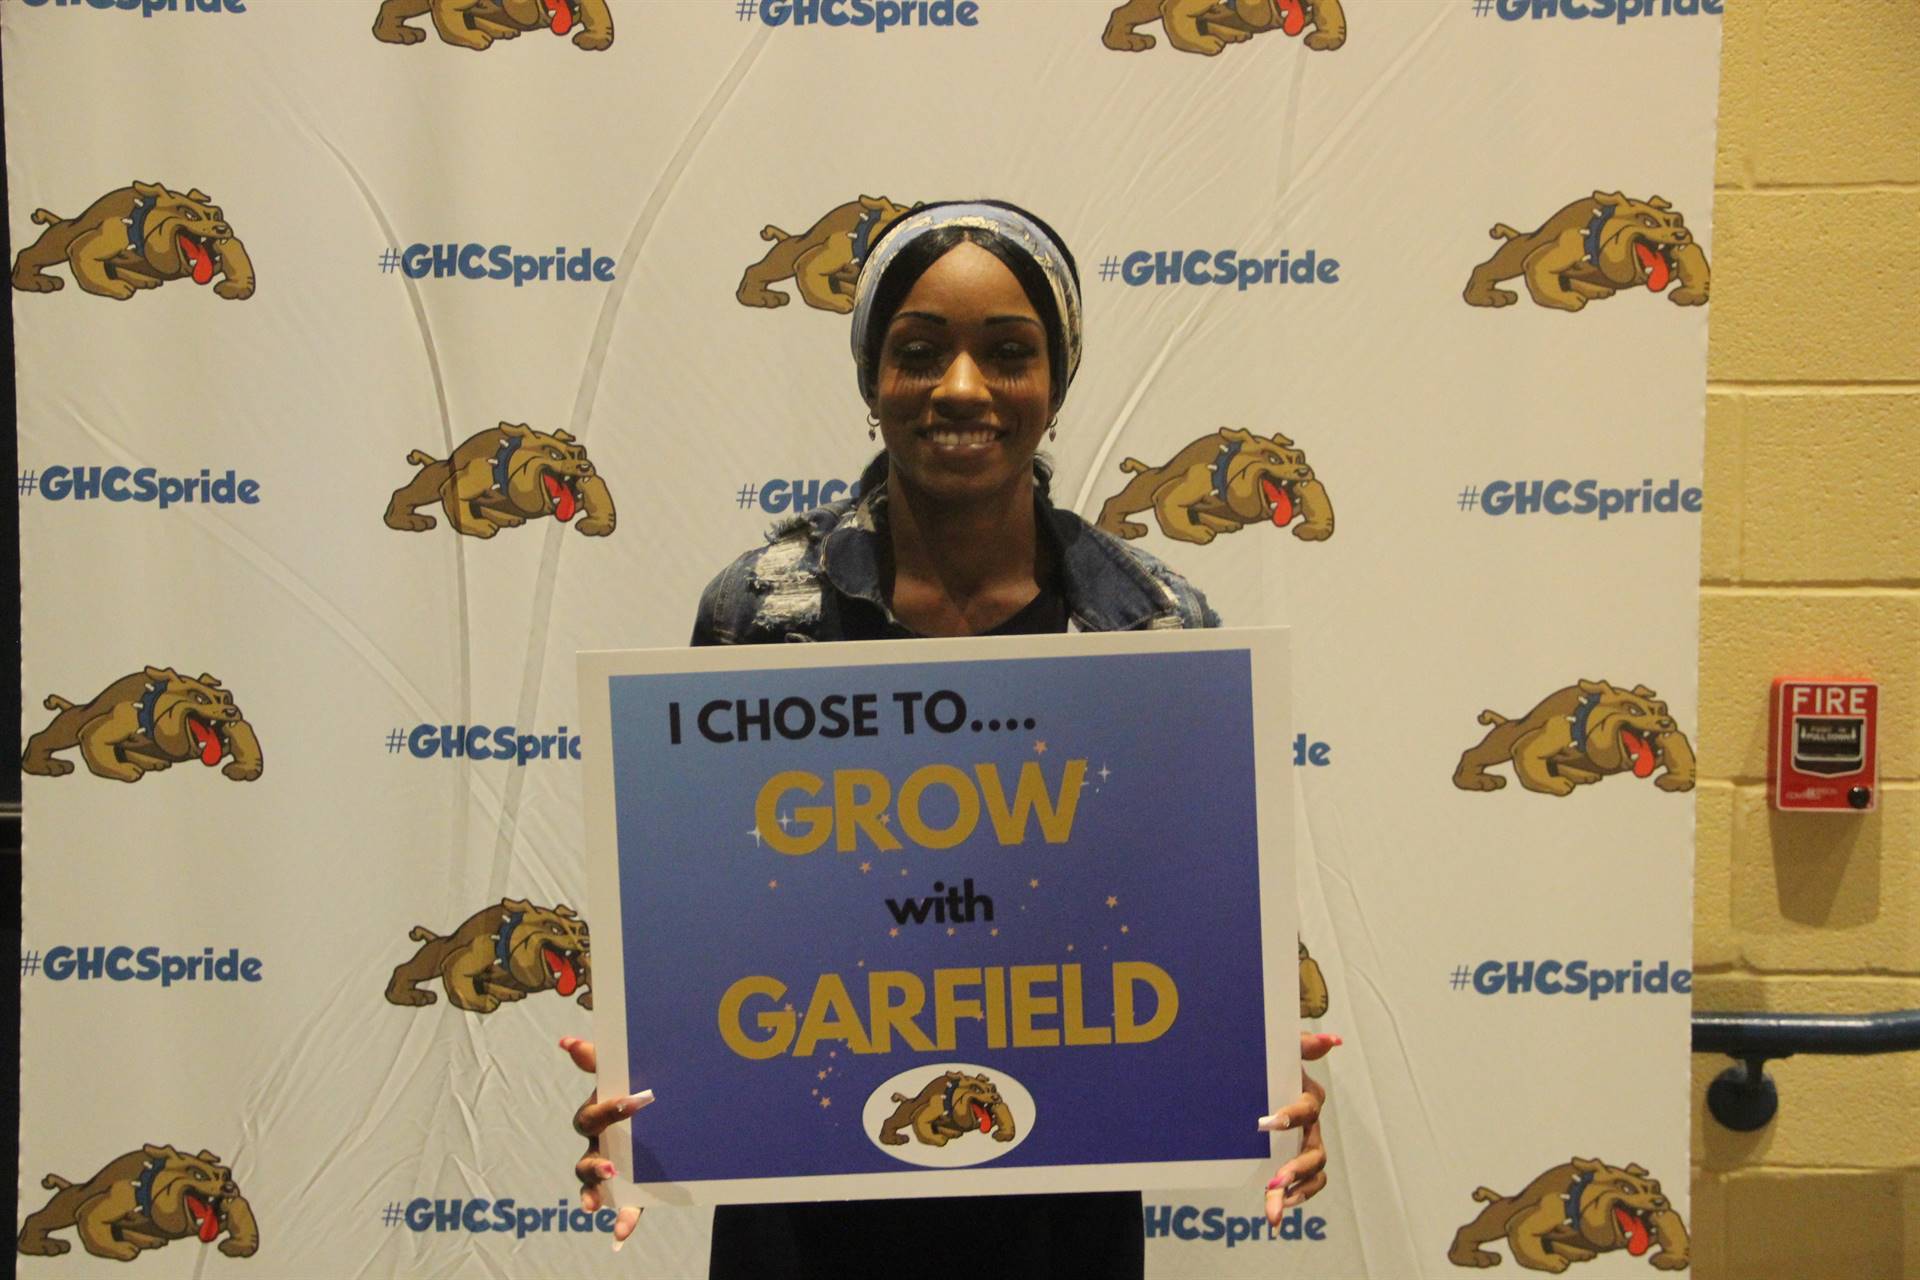 Grow with Garfield